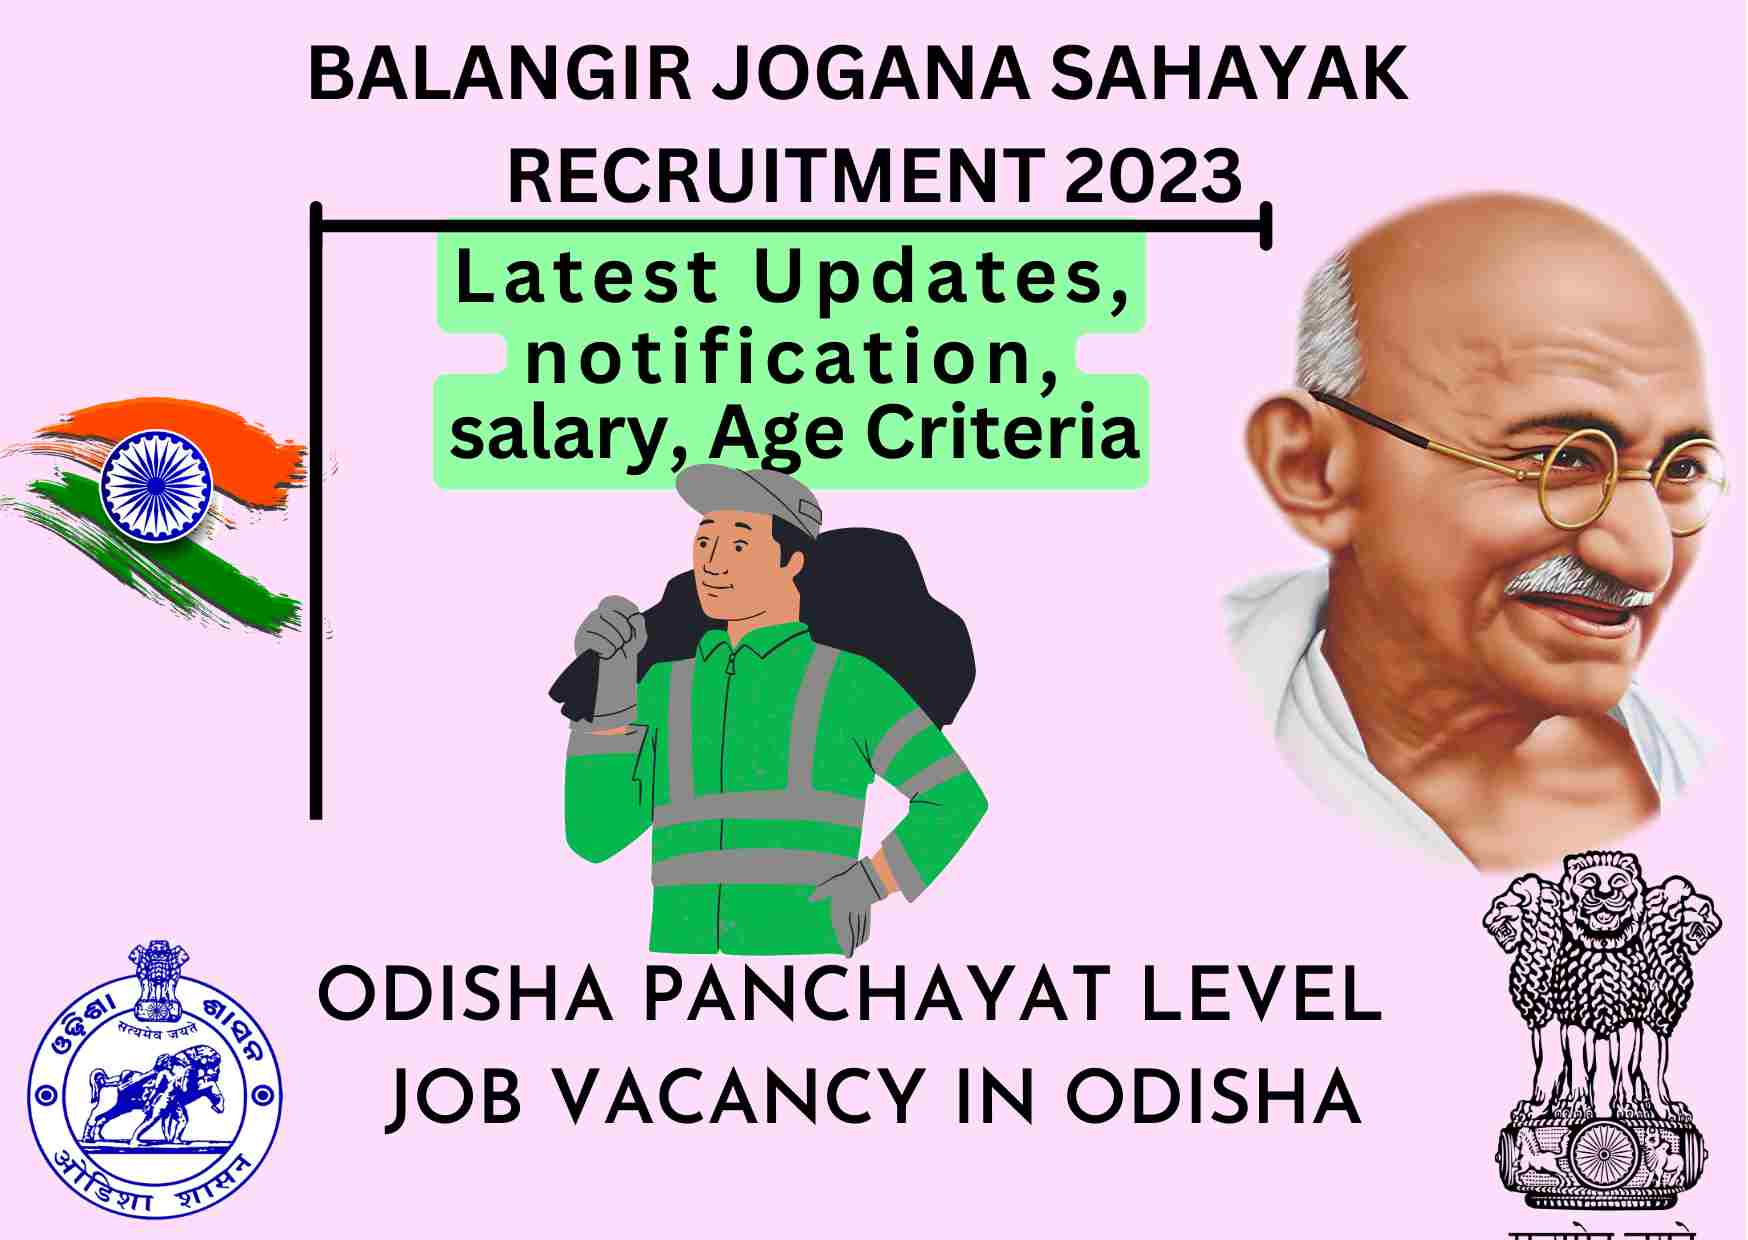 Jogana Sahayak Recruitment odisha 2023